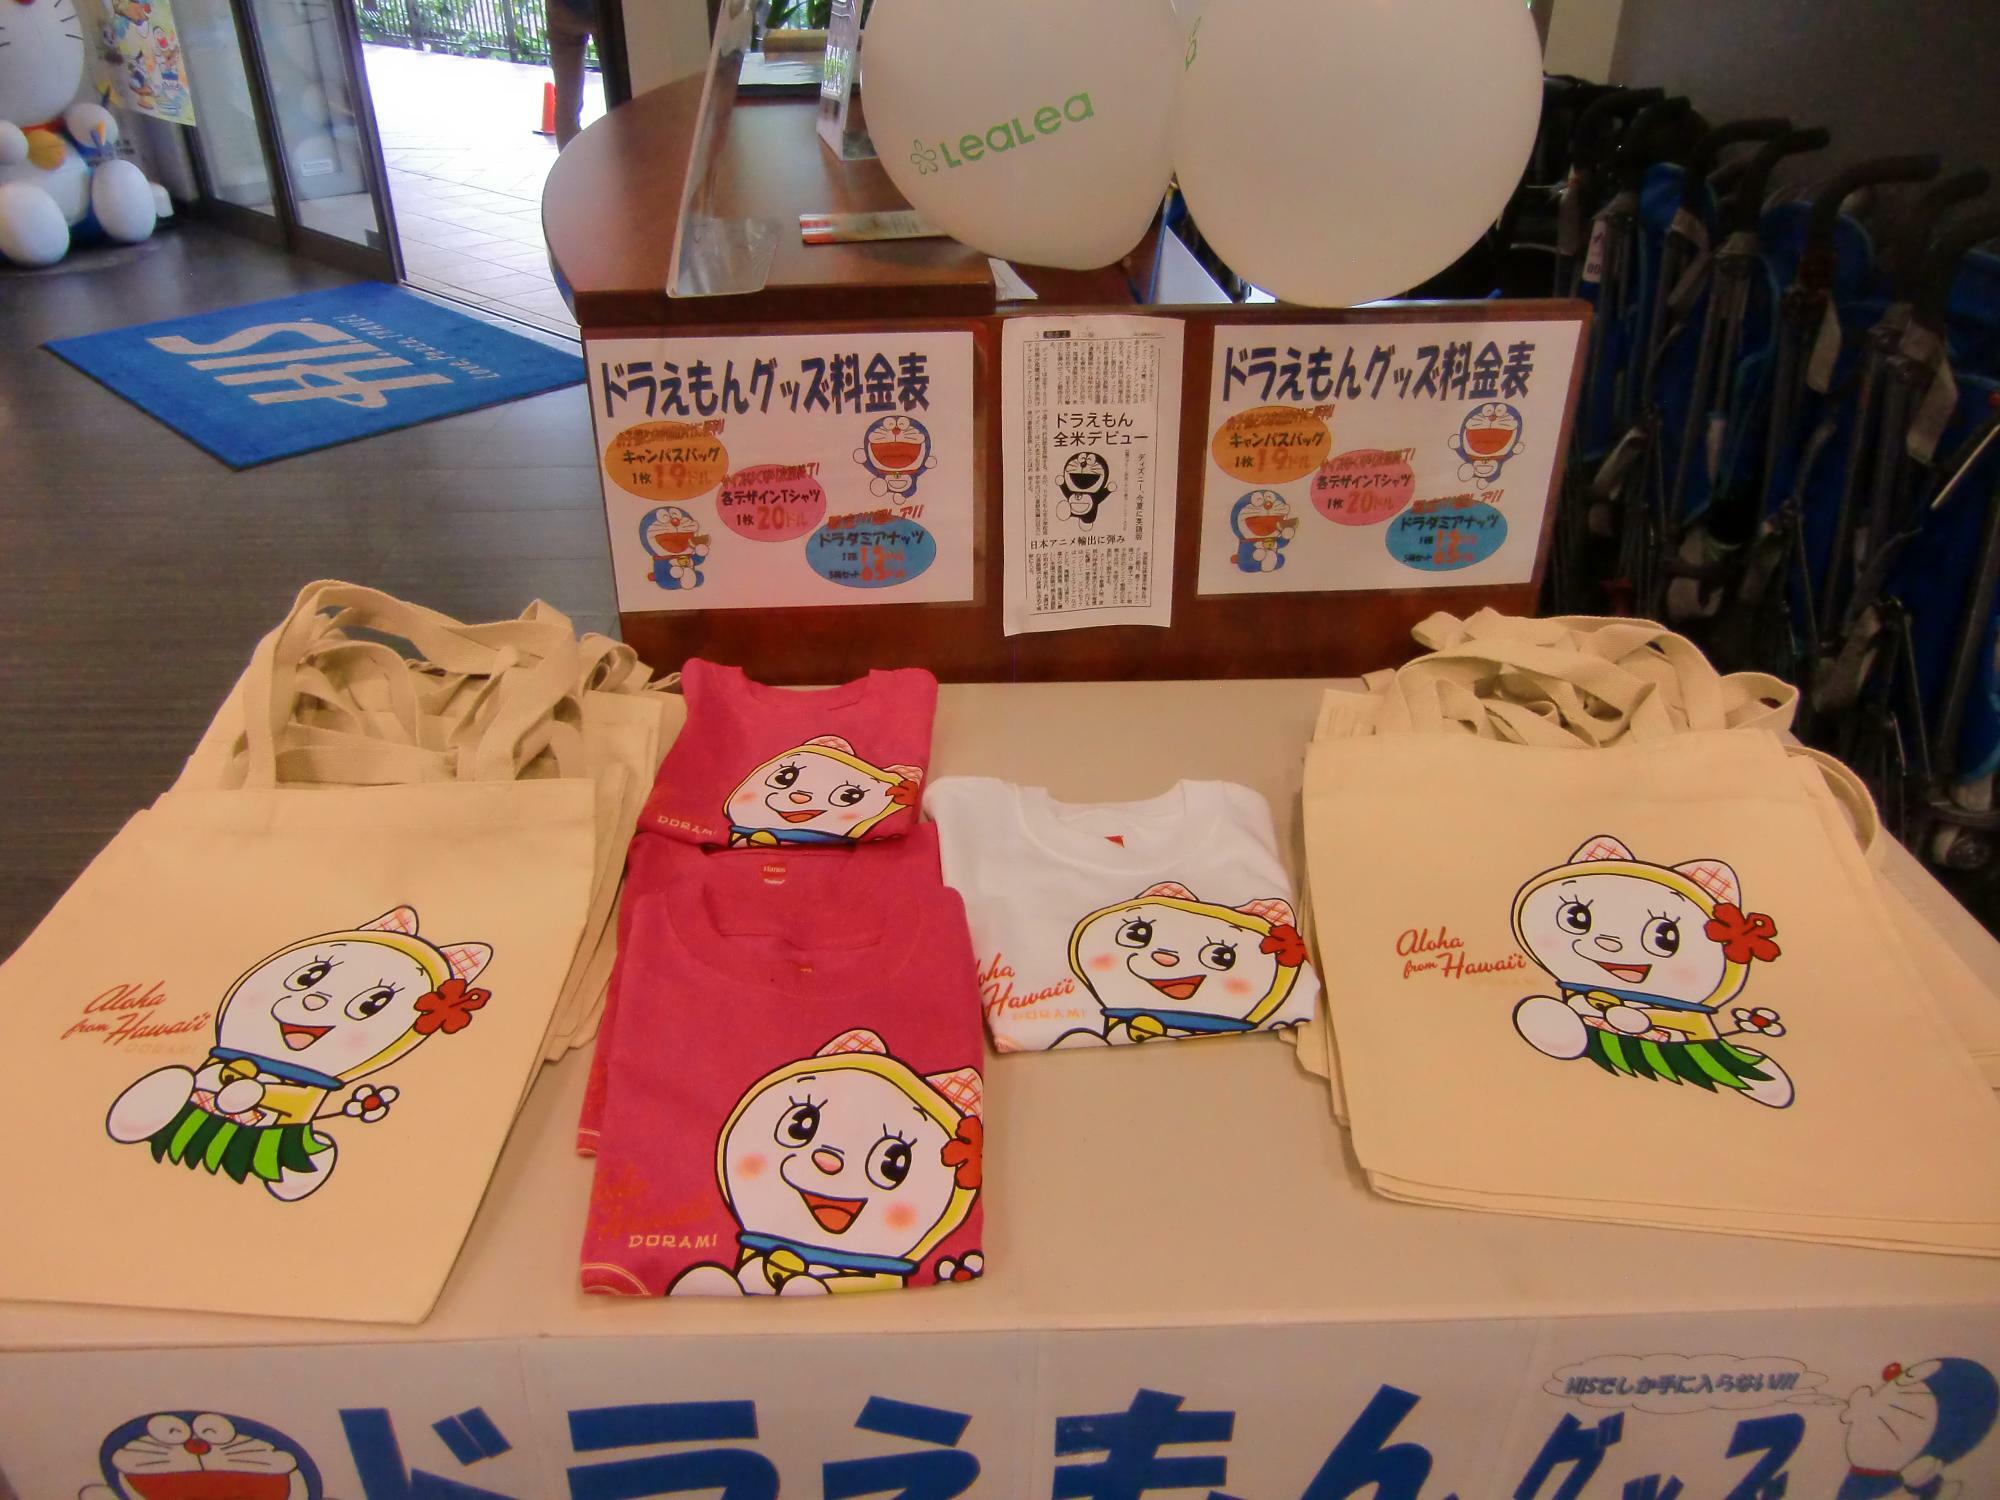 2013年に藤子・F・不二雄氏が生誕80周年を迎えたことを機に、2014年にハワイ州内で「ドラえもん」催事が開催された。ビショップ博物館での原画展示のほか、大手旅行会社HISではTシャツ等も販売された